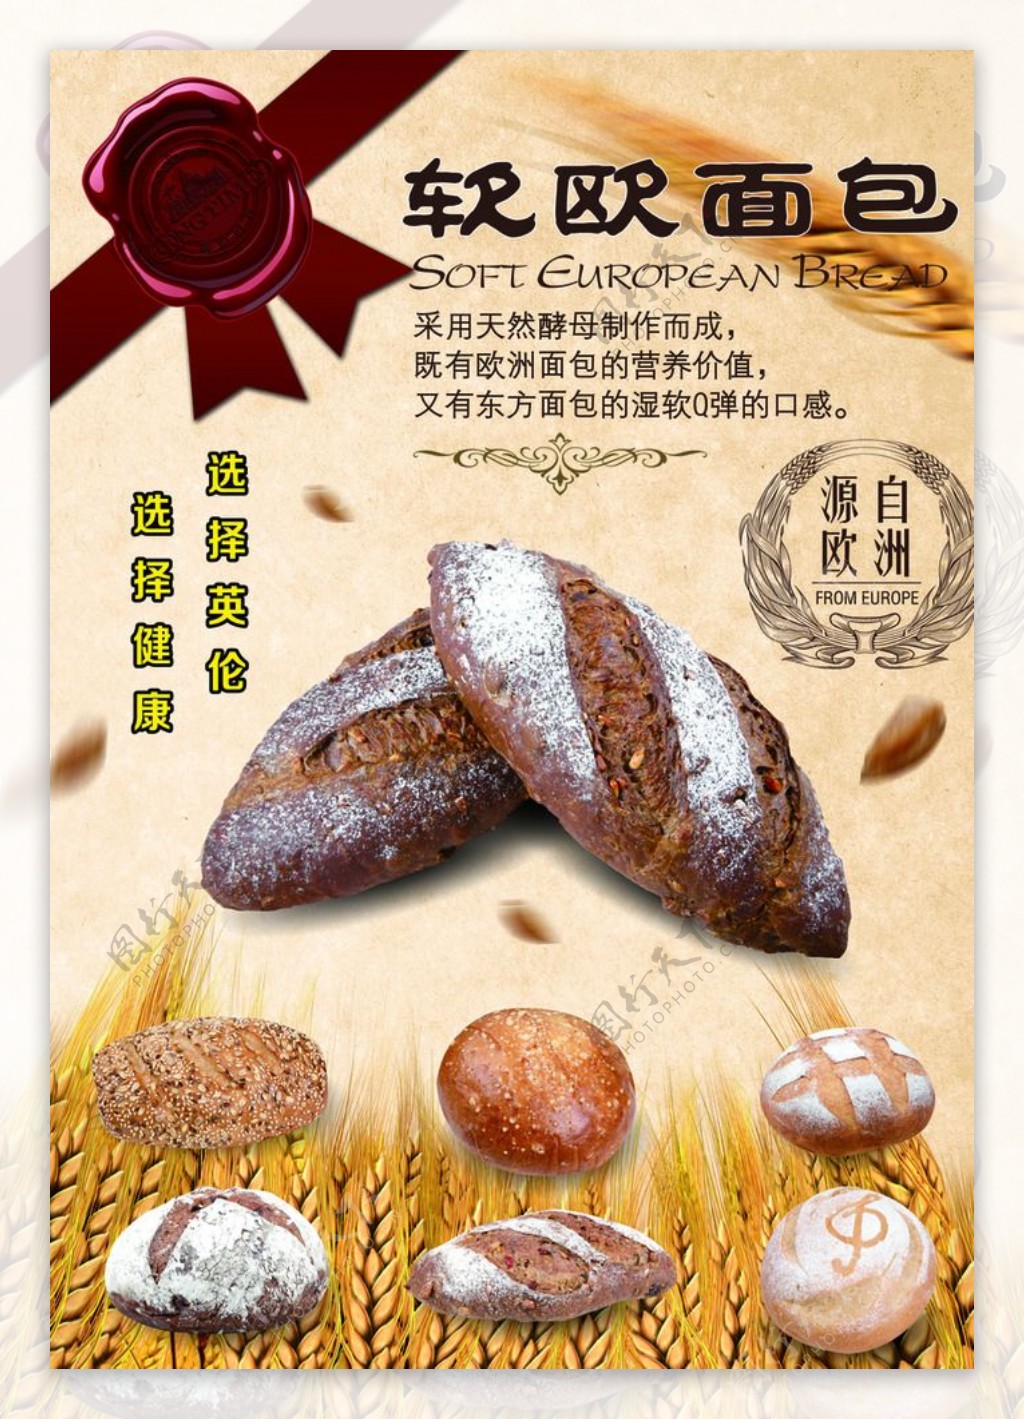 面包海报软欧面包图片